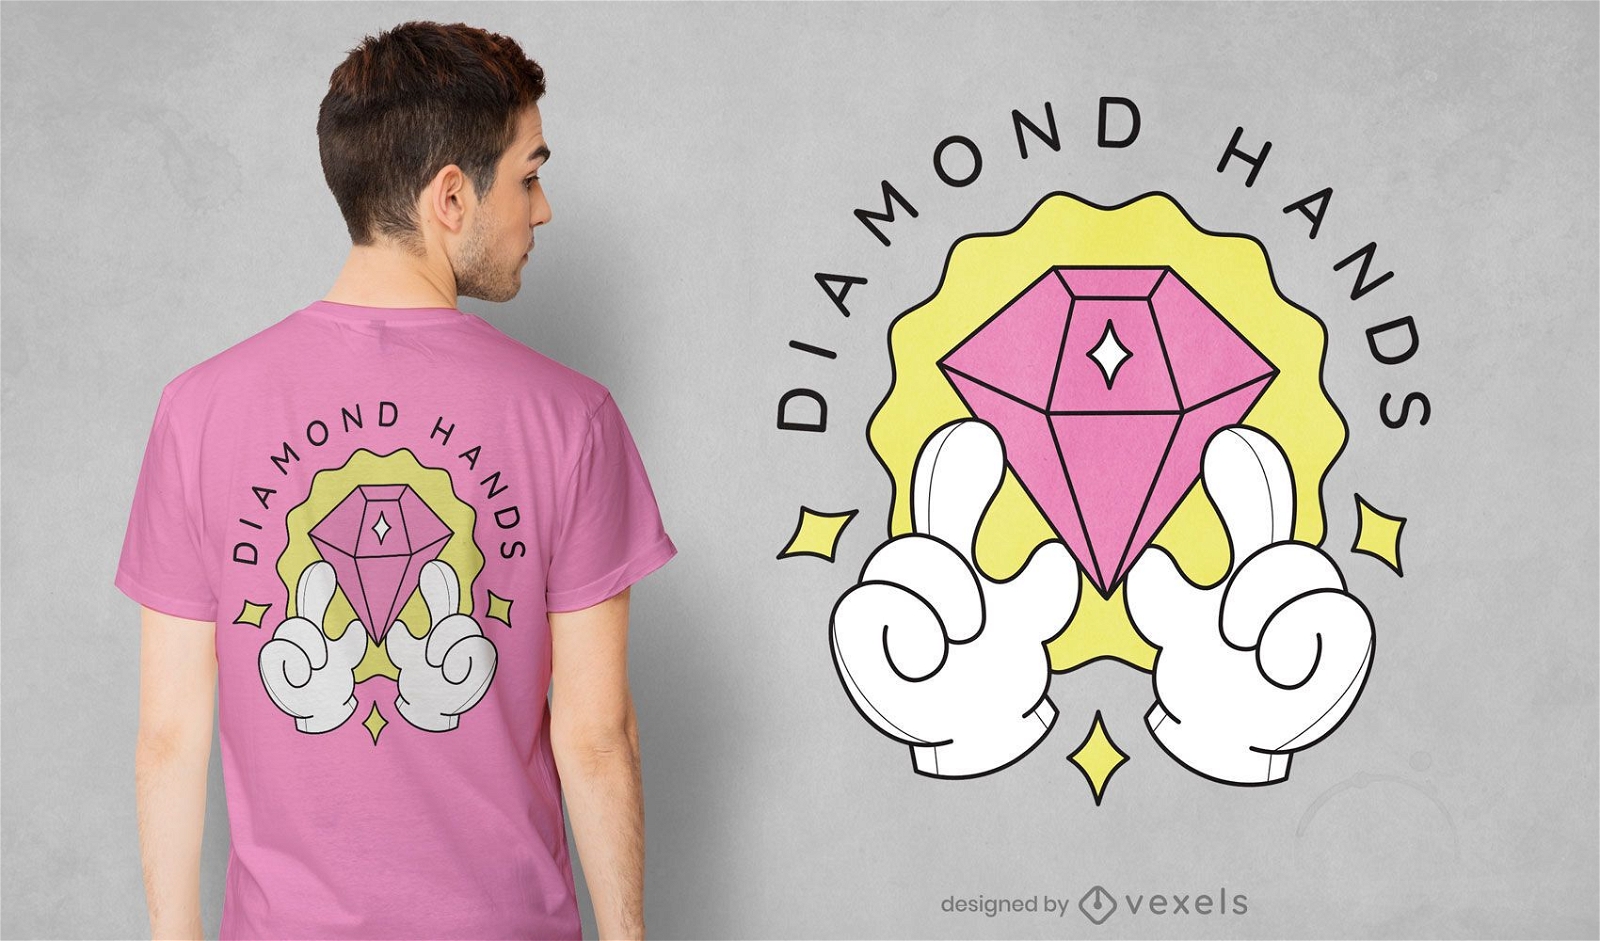 Diamond hands t-shirt design